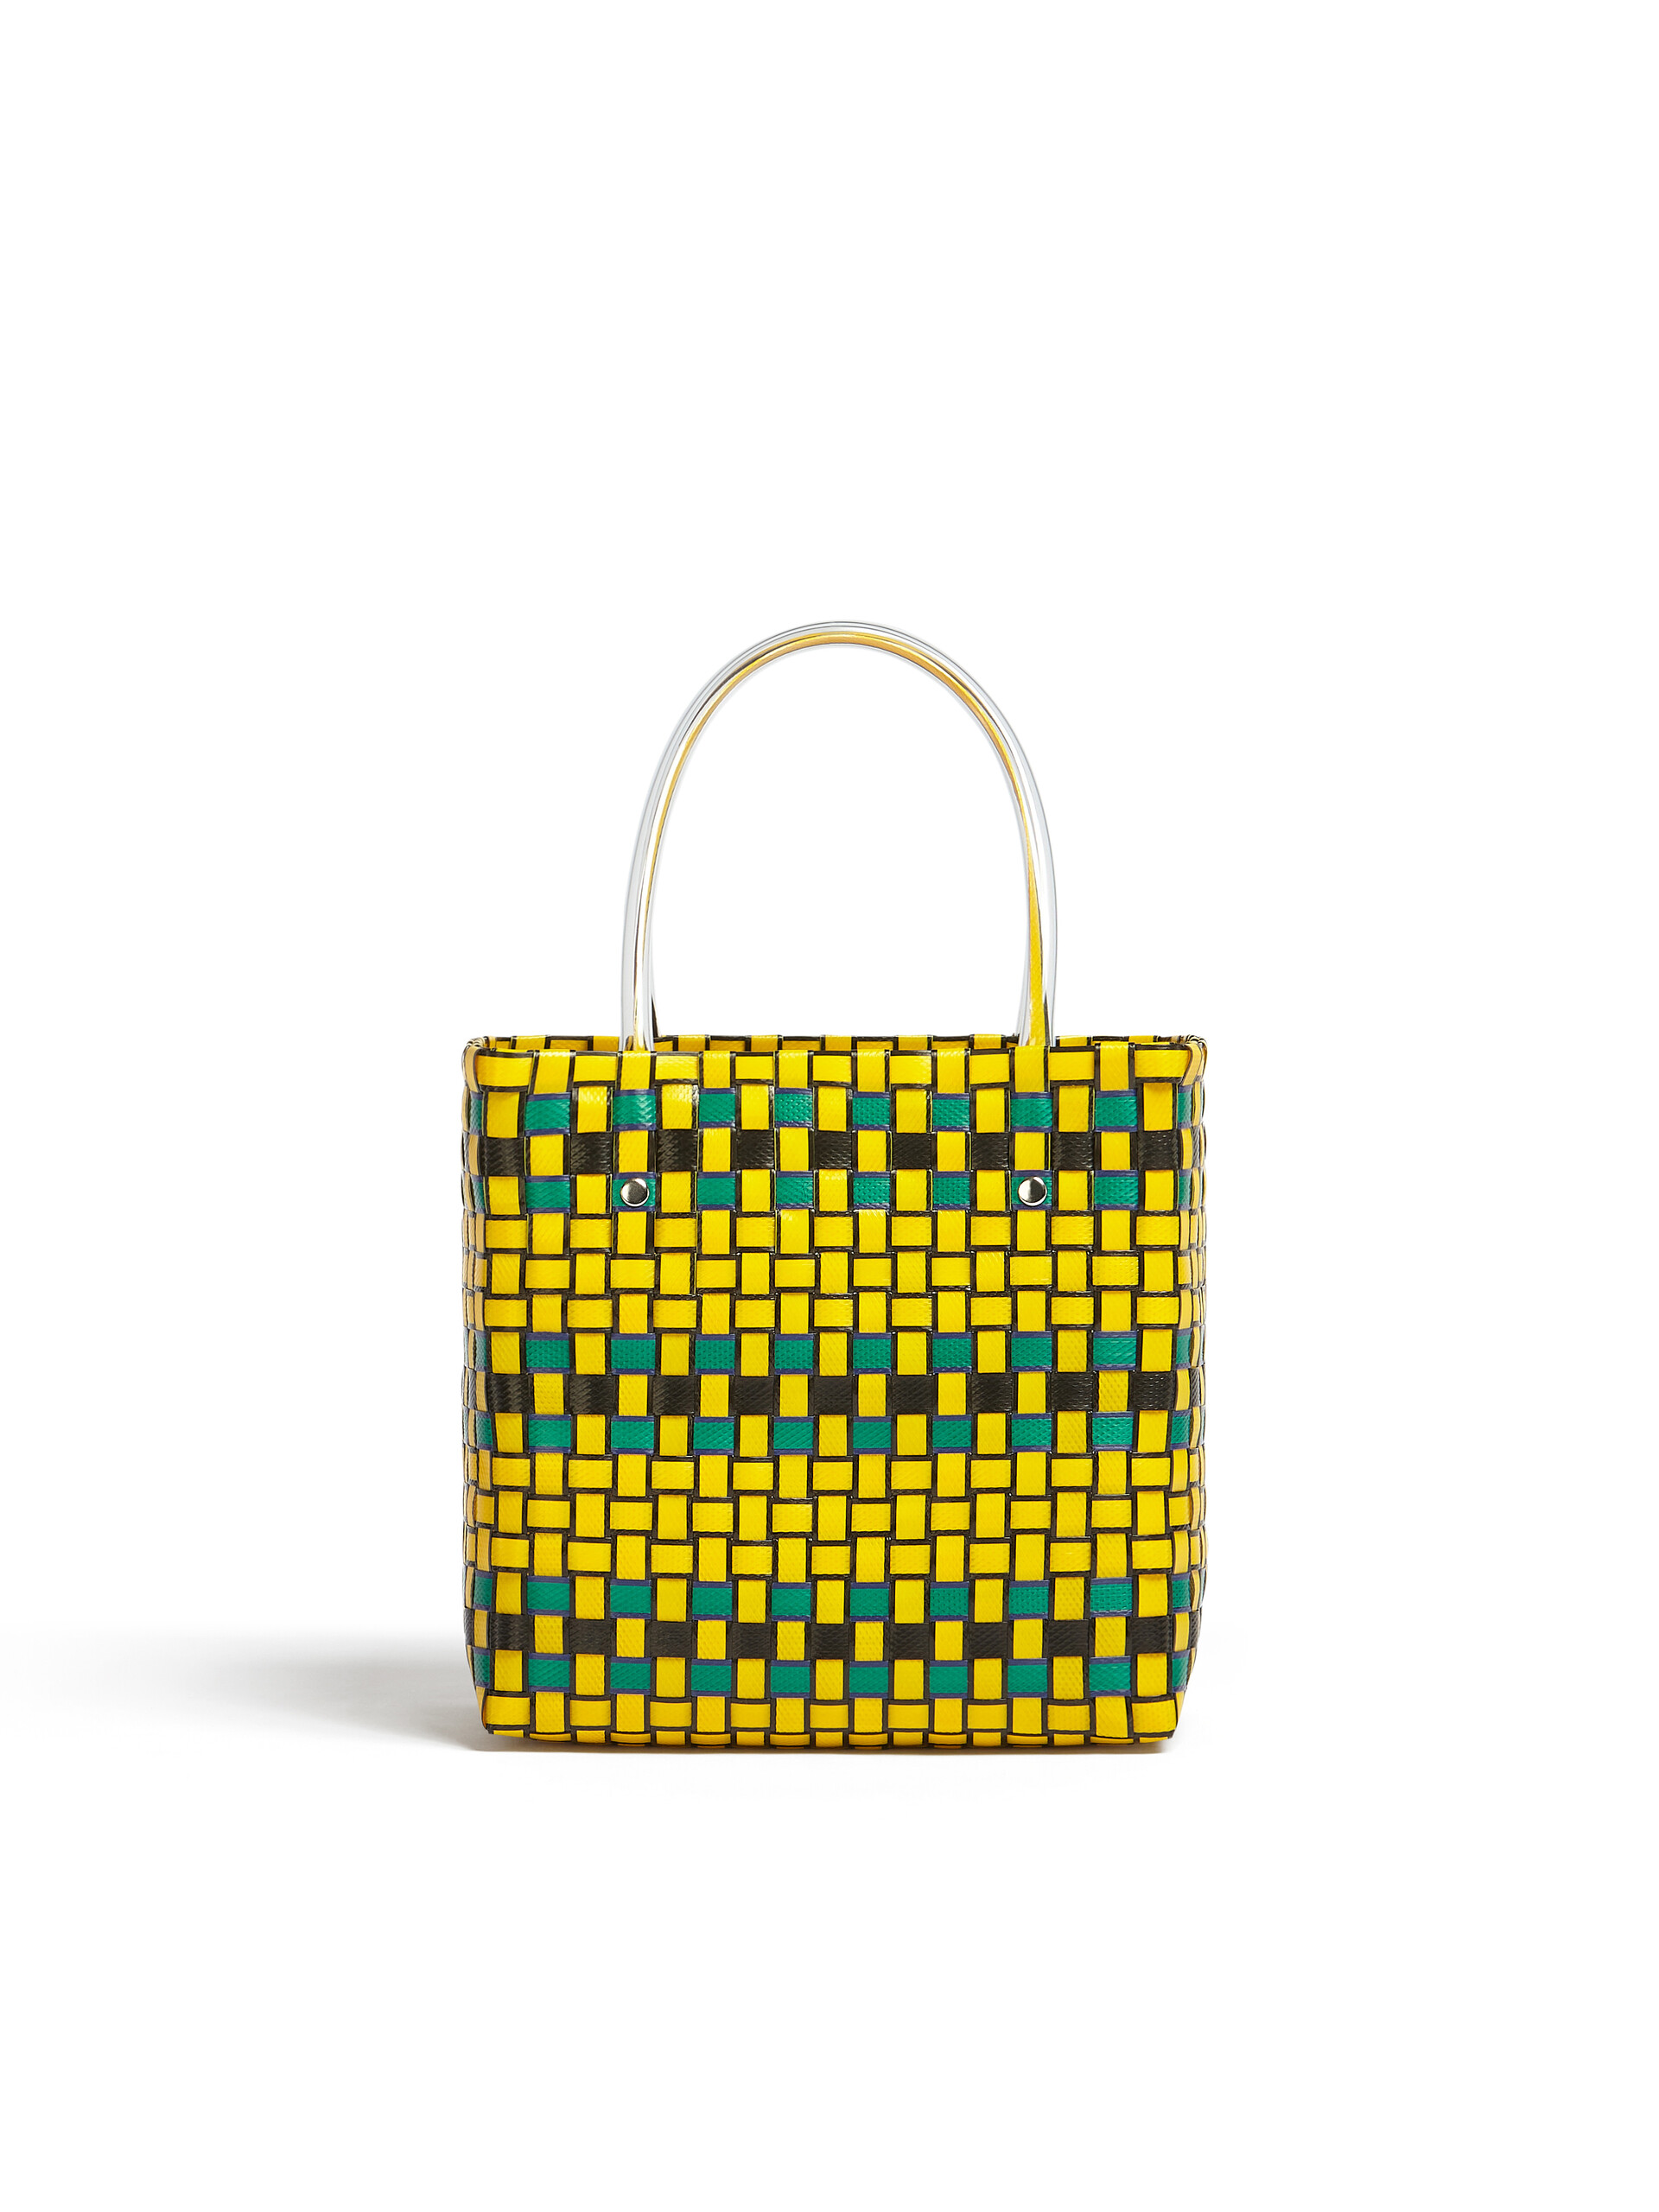 MARNI MARKET shopping bag in yellow polypropylene - Bags - Image 3